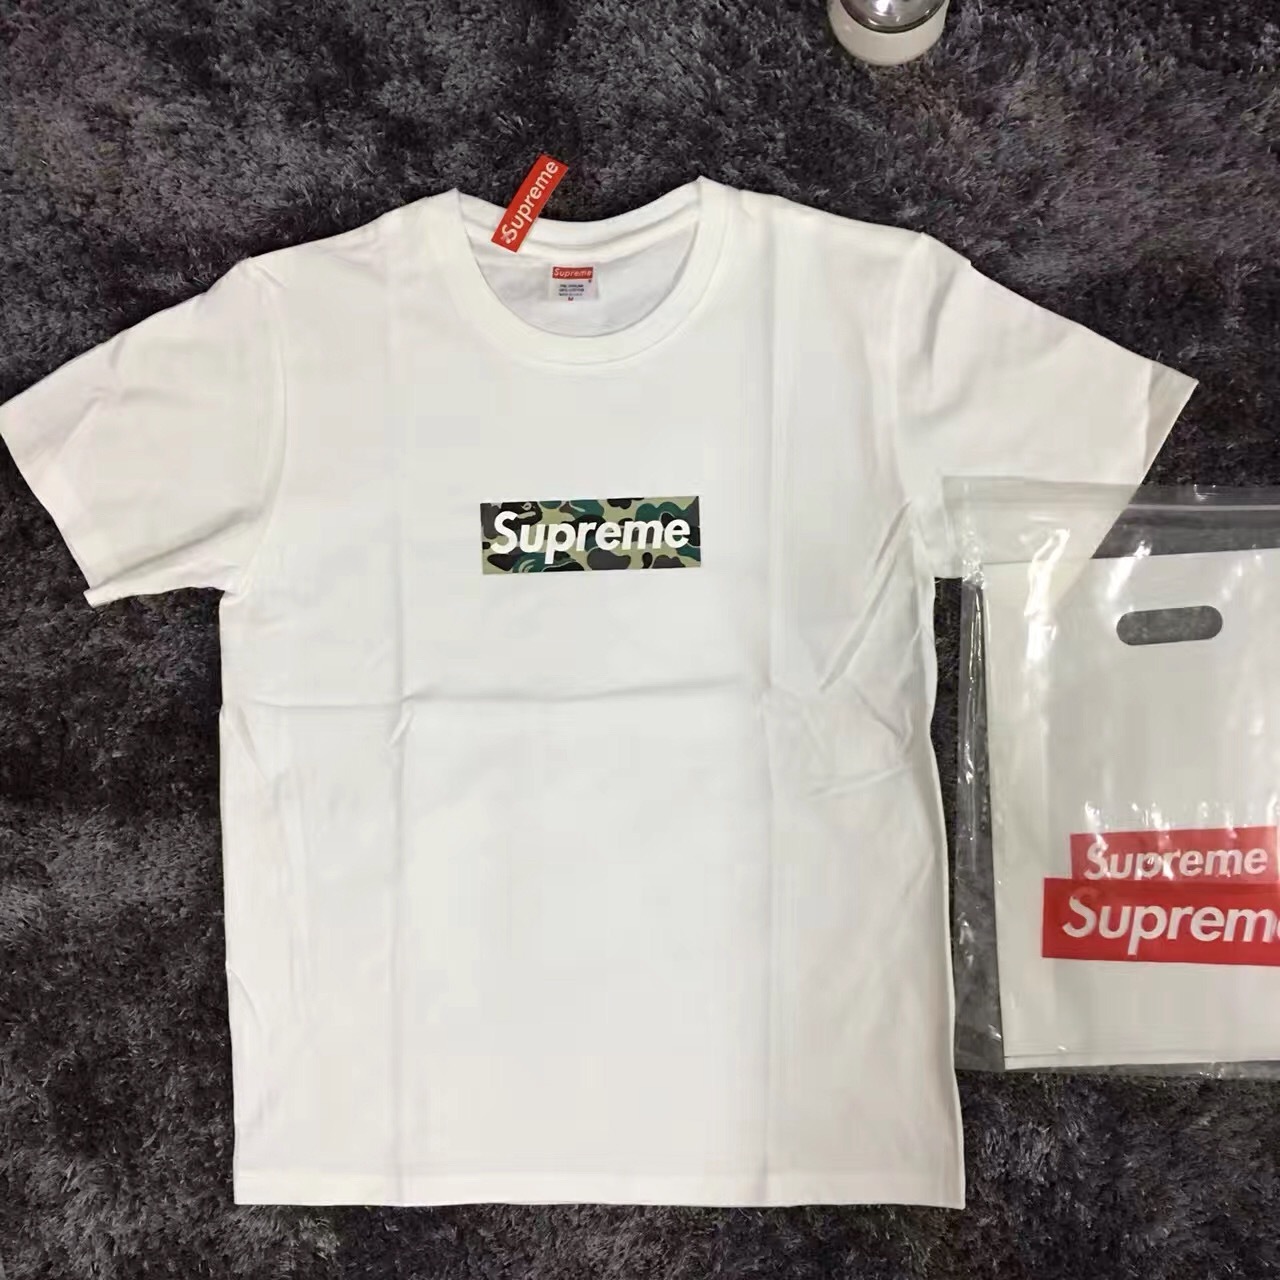 Supreme box logo T Shirts size S-XL